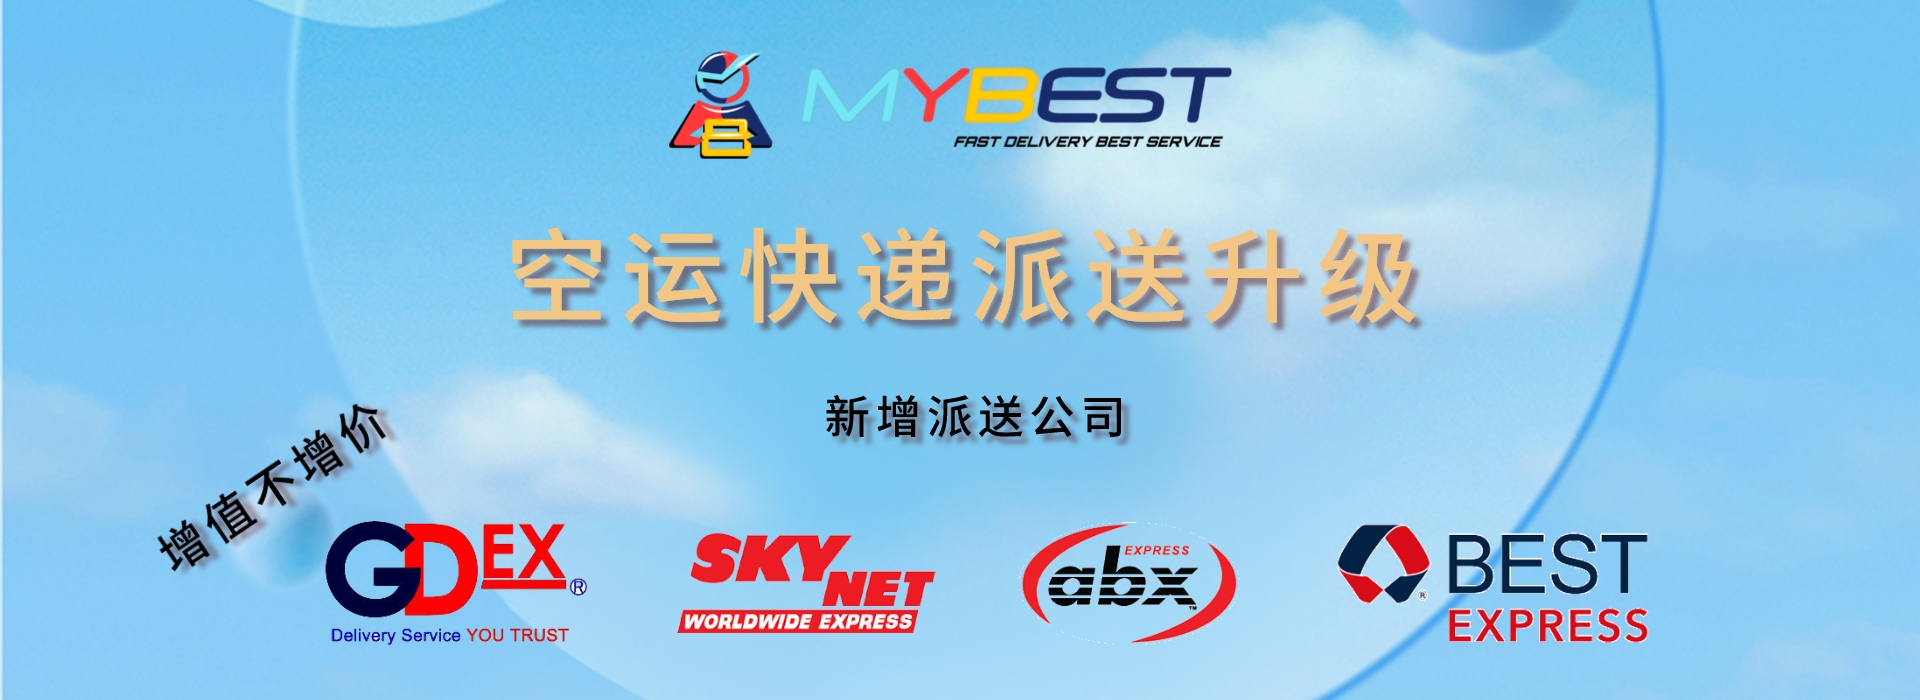 提升空运快递服务 备战双十一双十二 | MYBEST 中国到马来西亚空运快递服务 | 可选 GDEX ABX SKYNET BEST EXPRESS